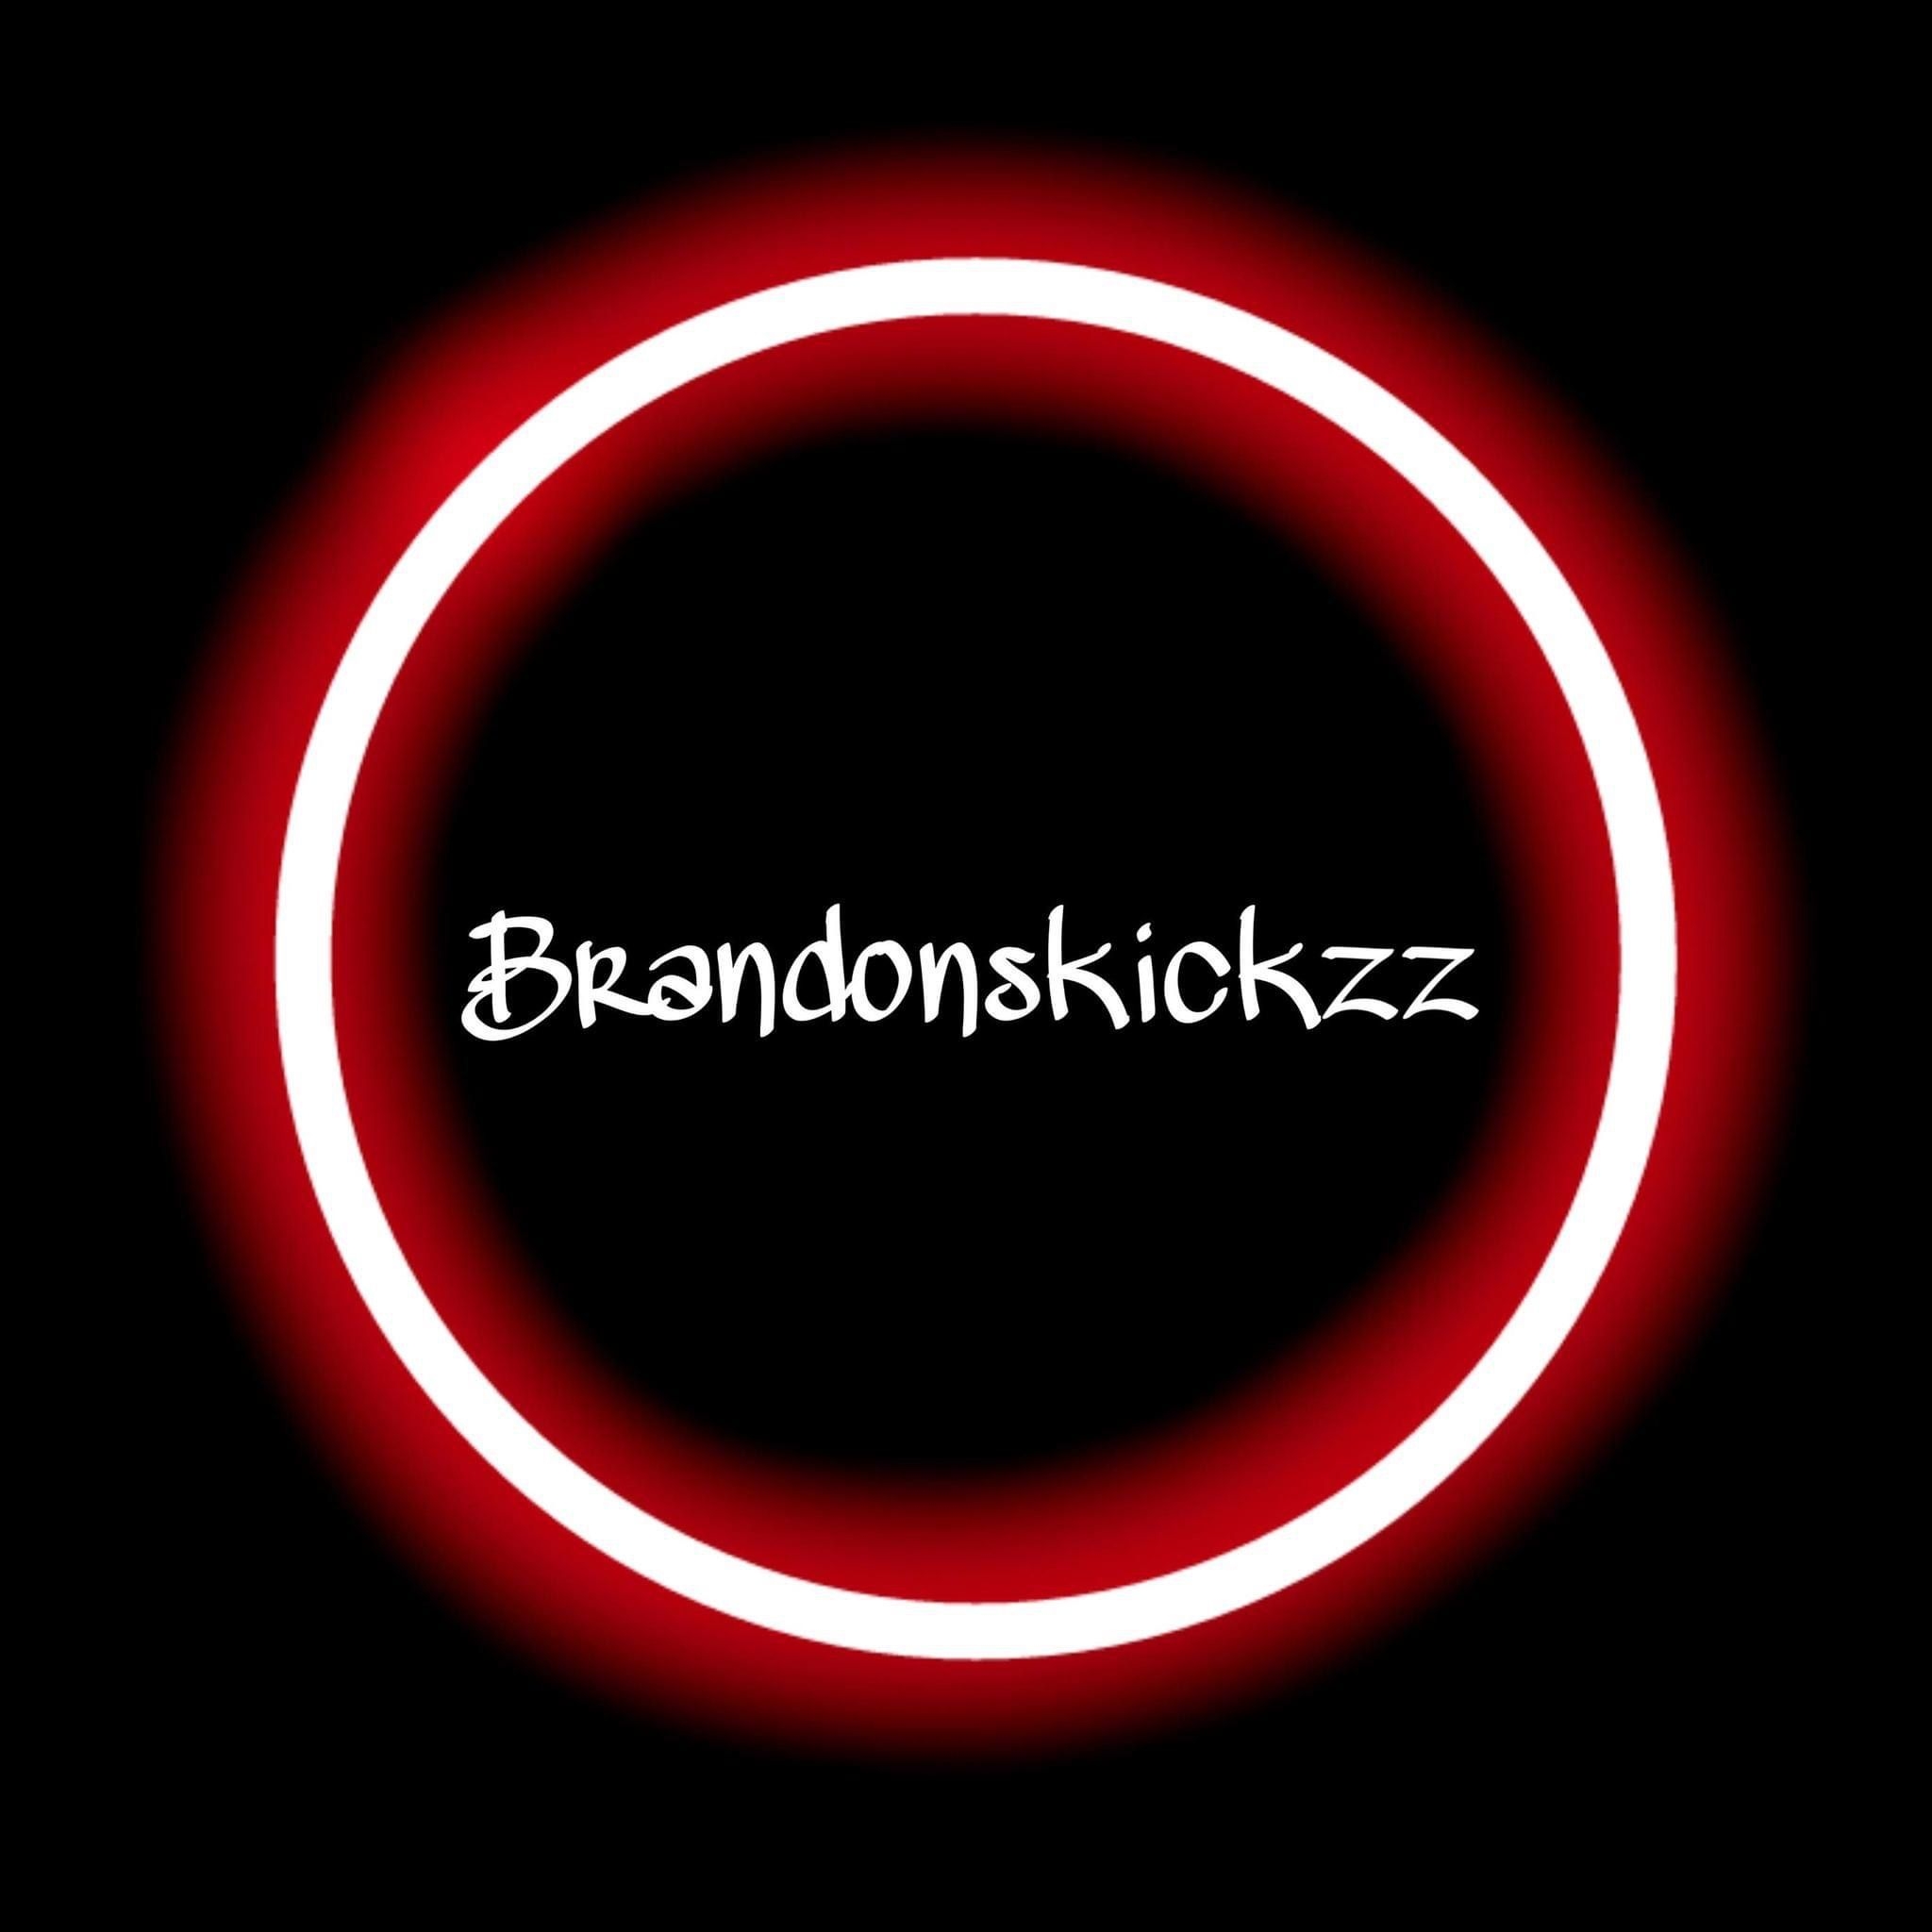 Brandonskickzz